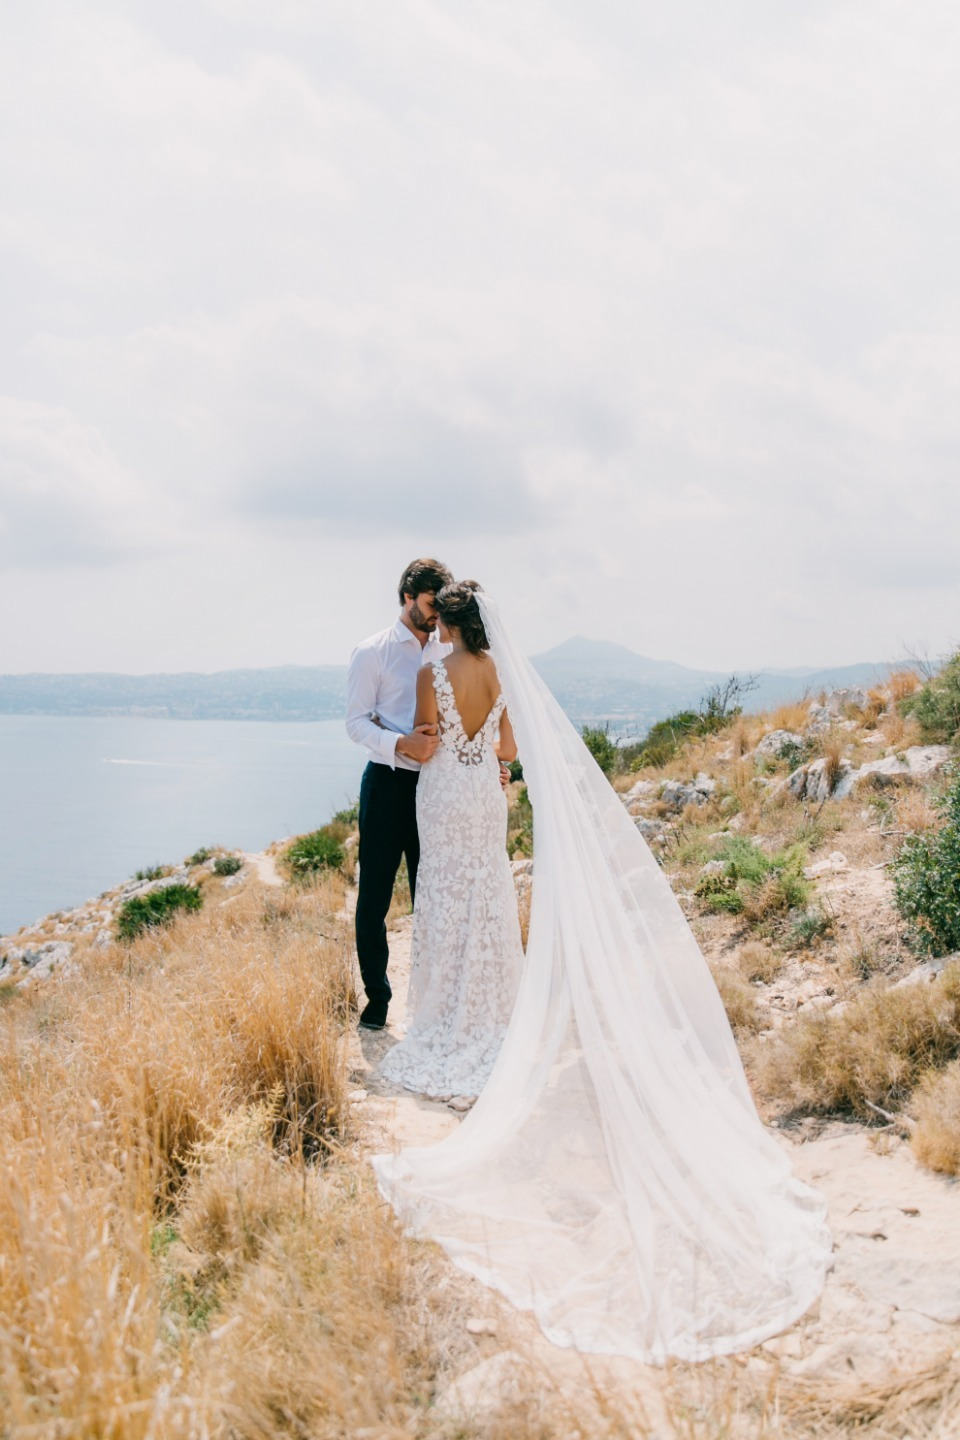 Наша свадьба в Испании: опыт невесты